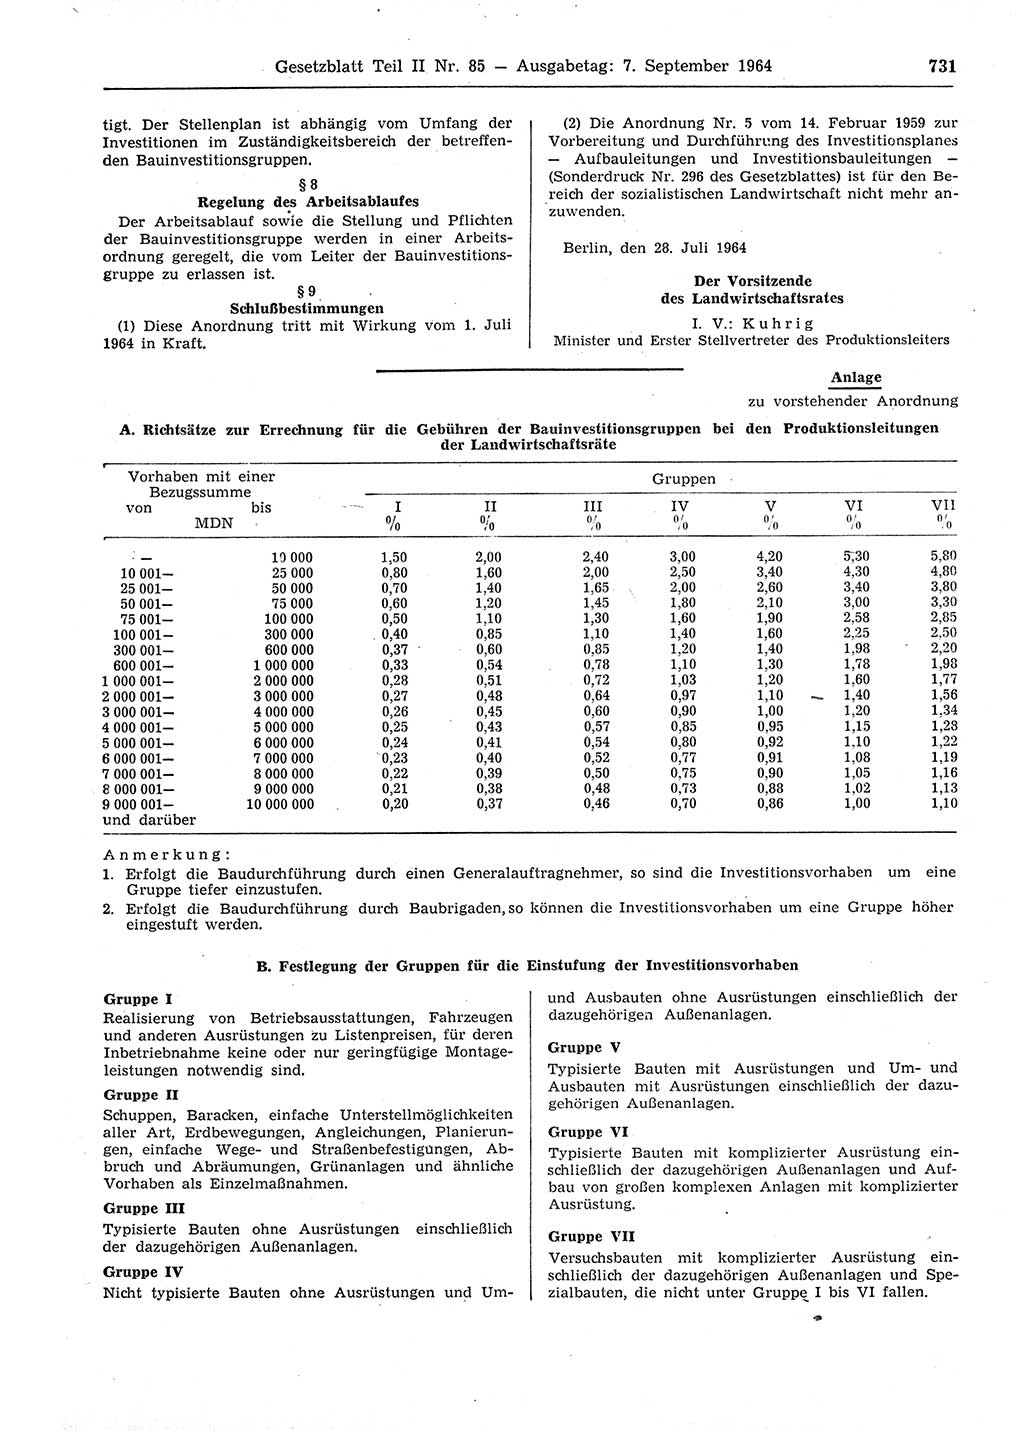 Gesetzblatt (GBl.) der Deutschen Demokratischen Republik (DDR) Teil ⅠⅠ 1964, Seite 731 (GBl. DDR ⅠⅠ 1964, S. 731)